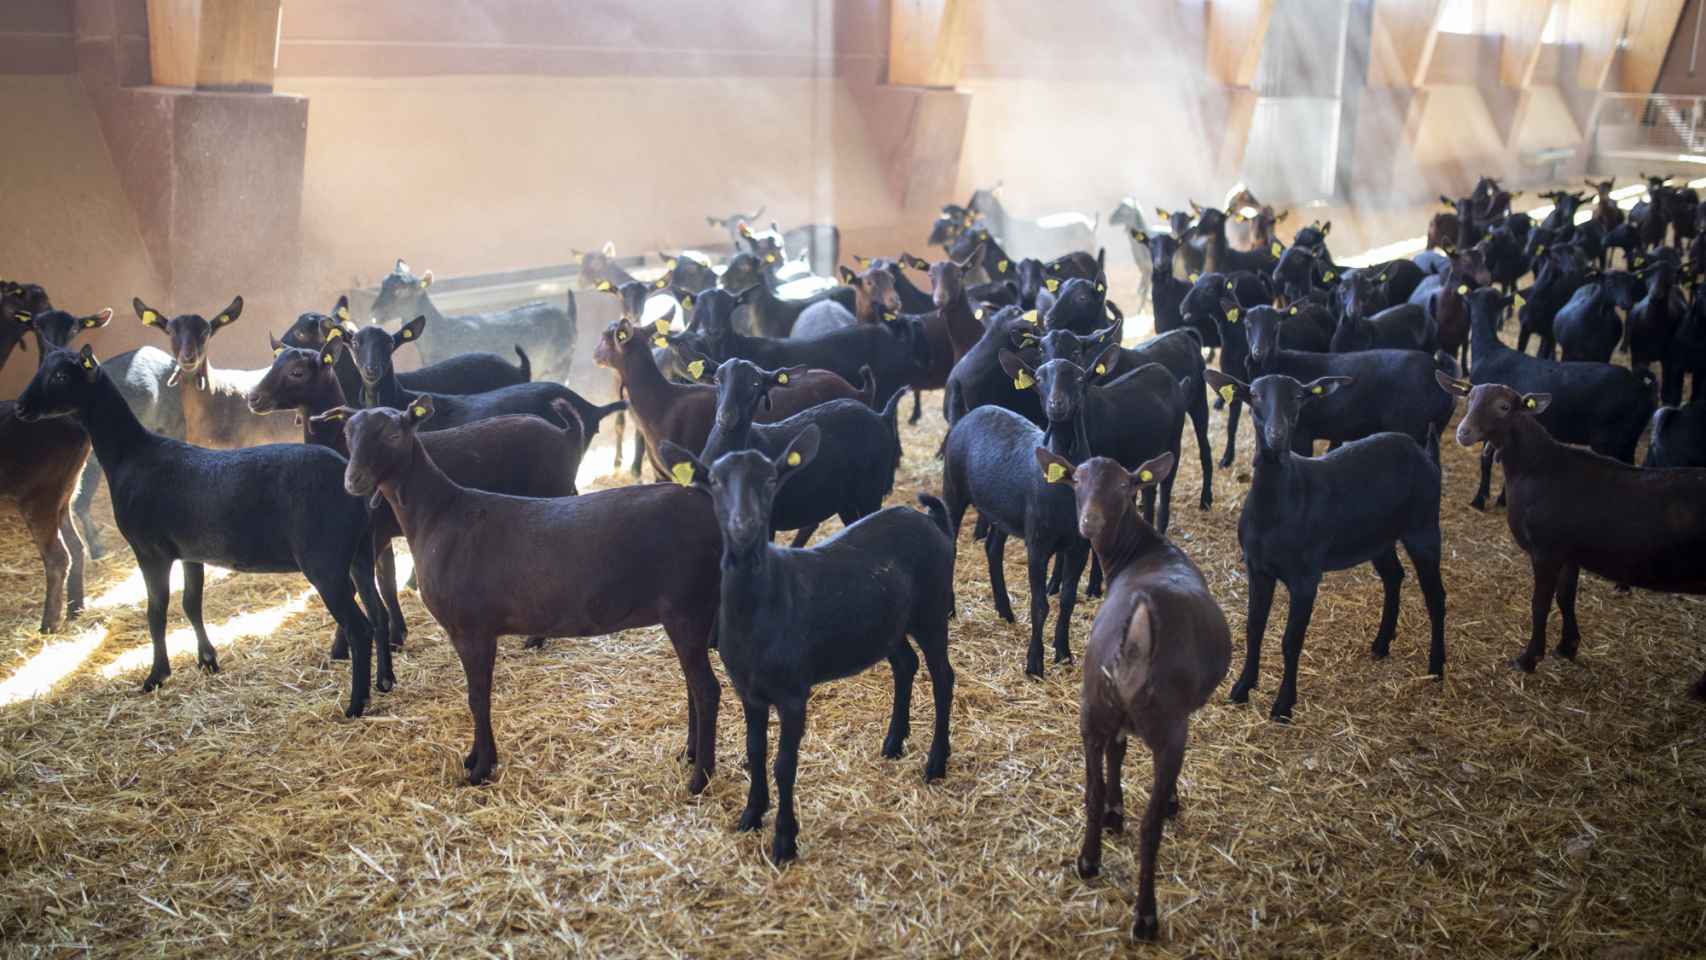 Desde su fundación, El Cantero de Letur ha producido lácteos ecológicos. Su ganado vive en condiciones dignas.